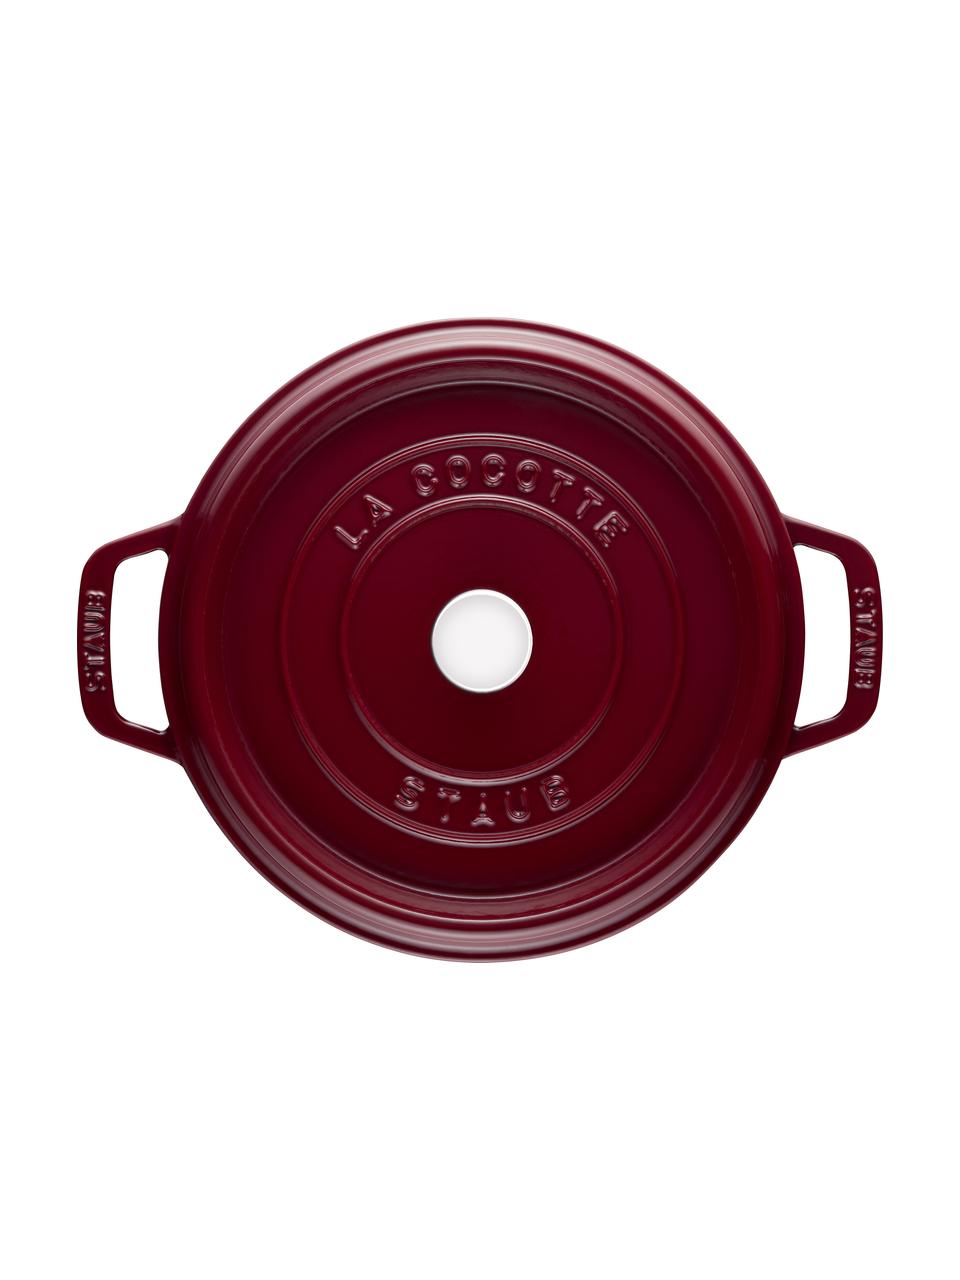 Kulatý pekáč z litiny La Cocotte, Smaltovaná litina, Vínově červená, stříbrná, Ø 24 cm, V 15 cm